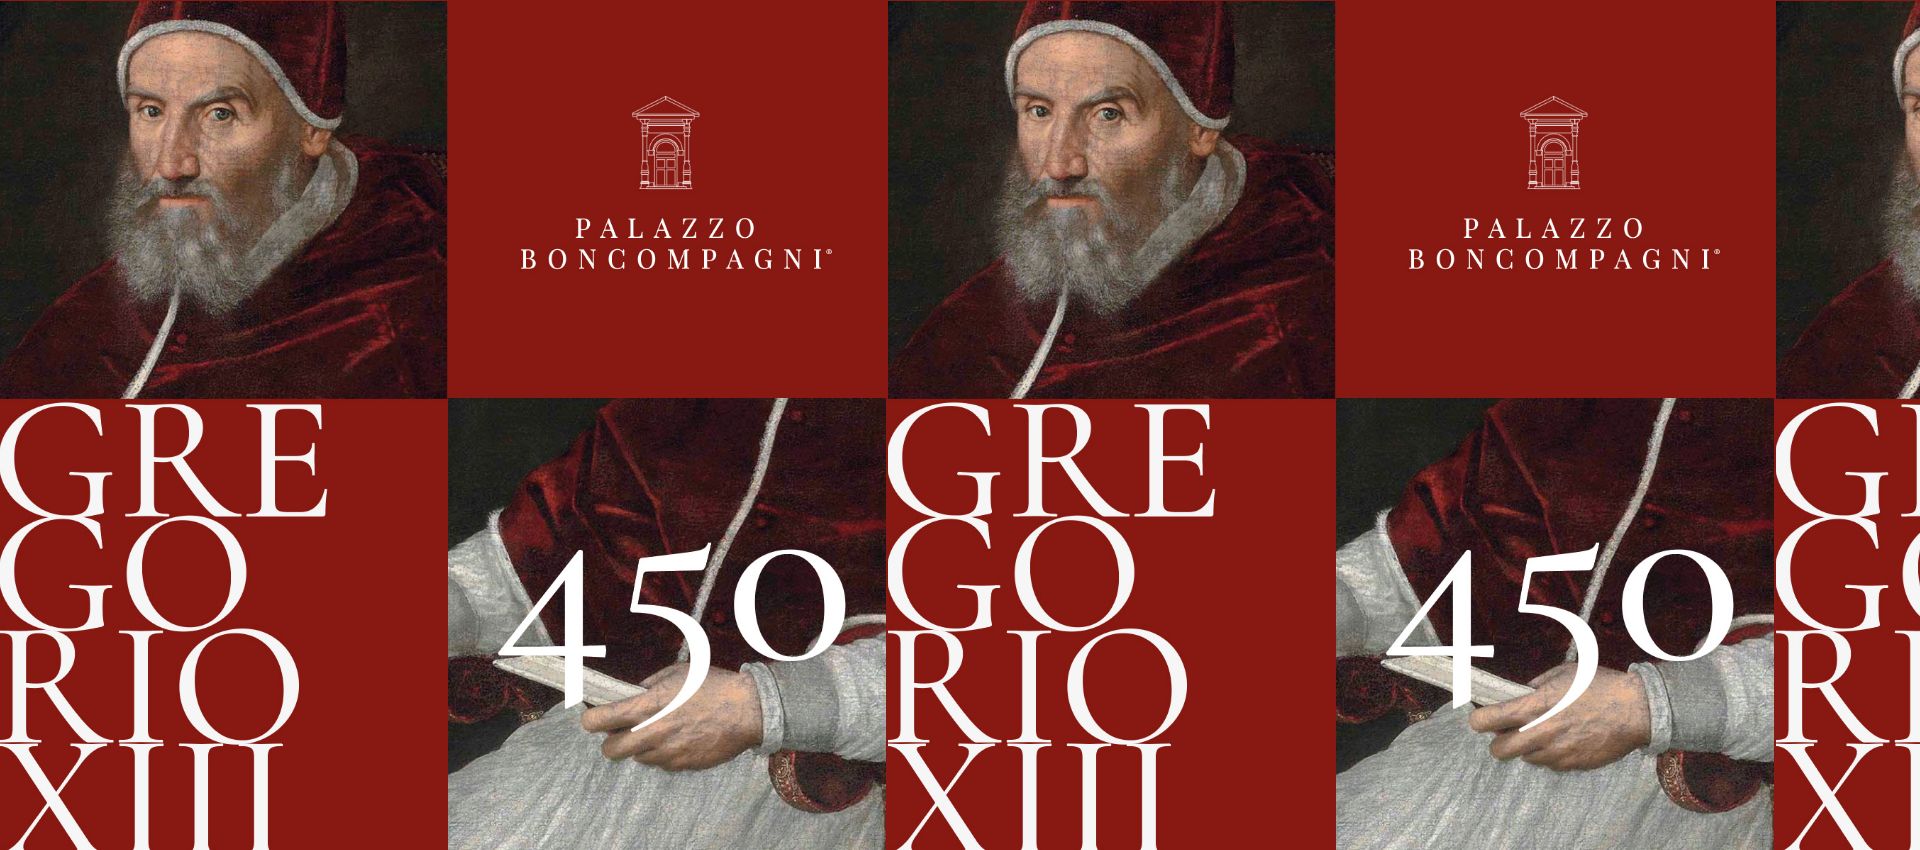 <p>Maggio 2022</p>
<h2>450 anni di Papa<br />
Gregorio XIII</h2>
<h3>1572-2022</h3>
